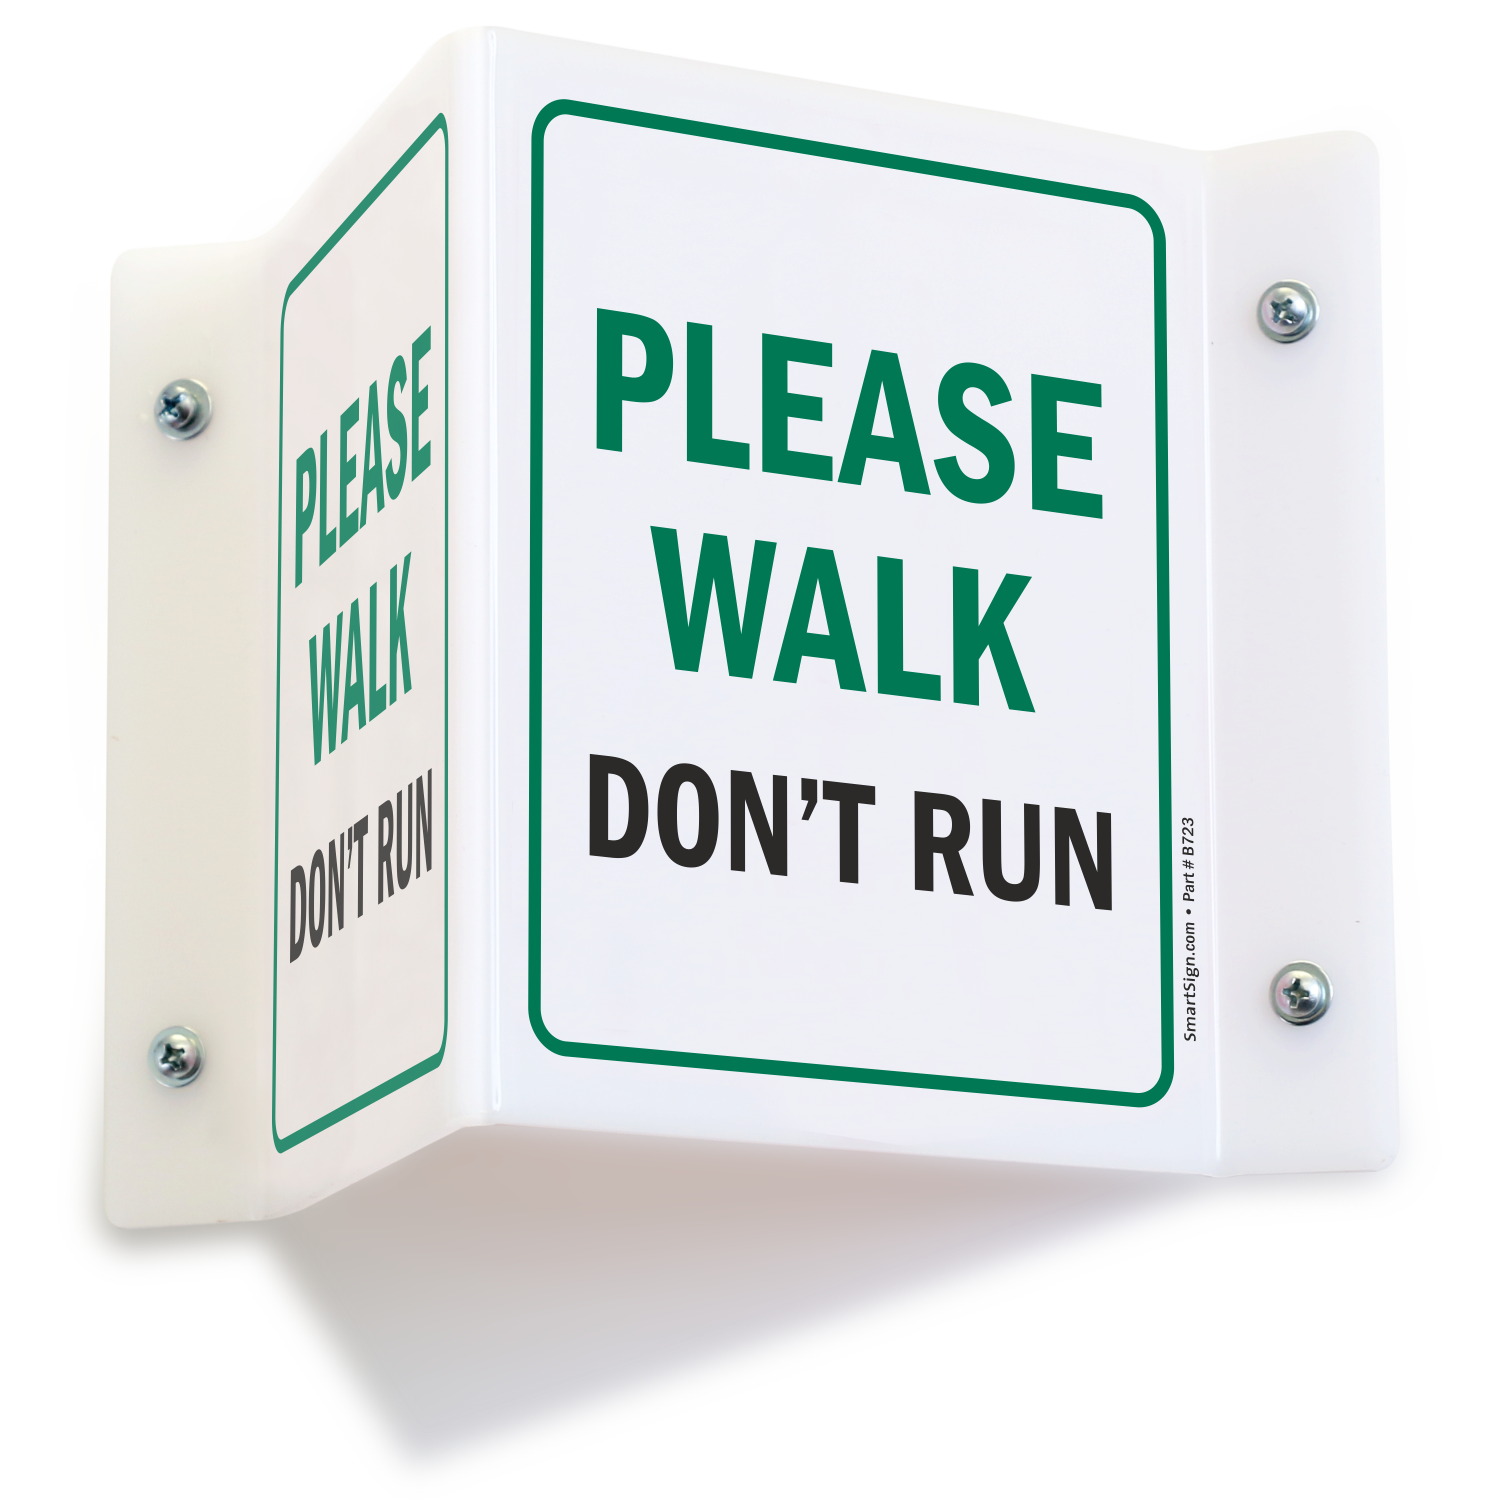 Dont running. Walk don't Run. Please don't Run. Don't walk sign. Don't Run sign.